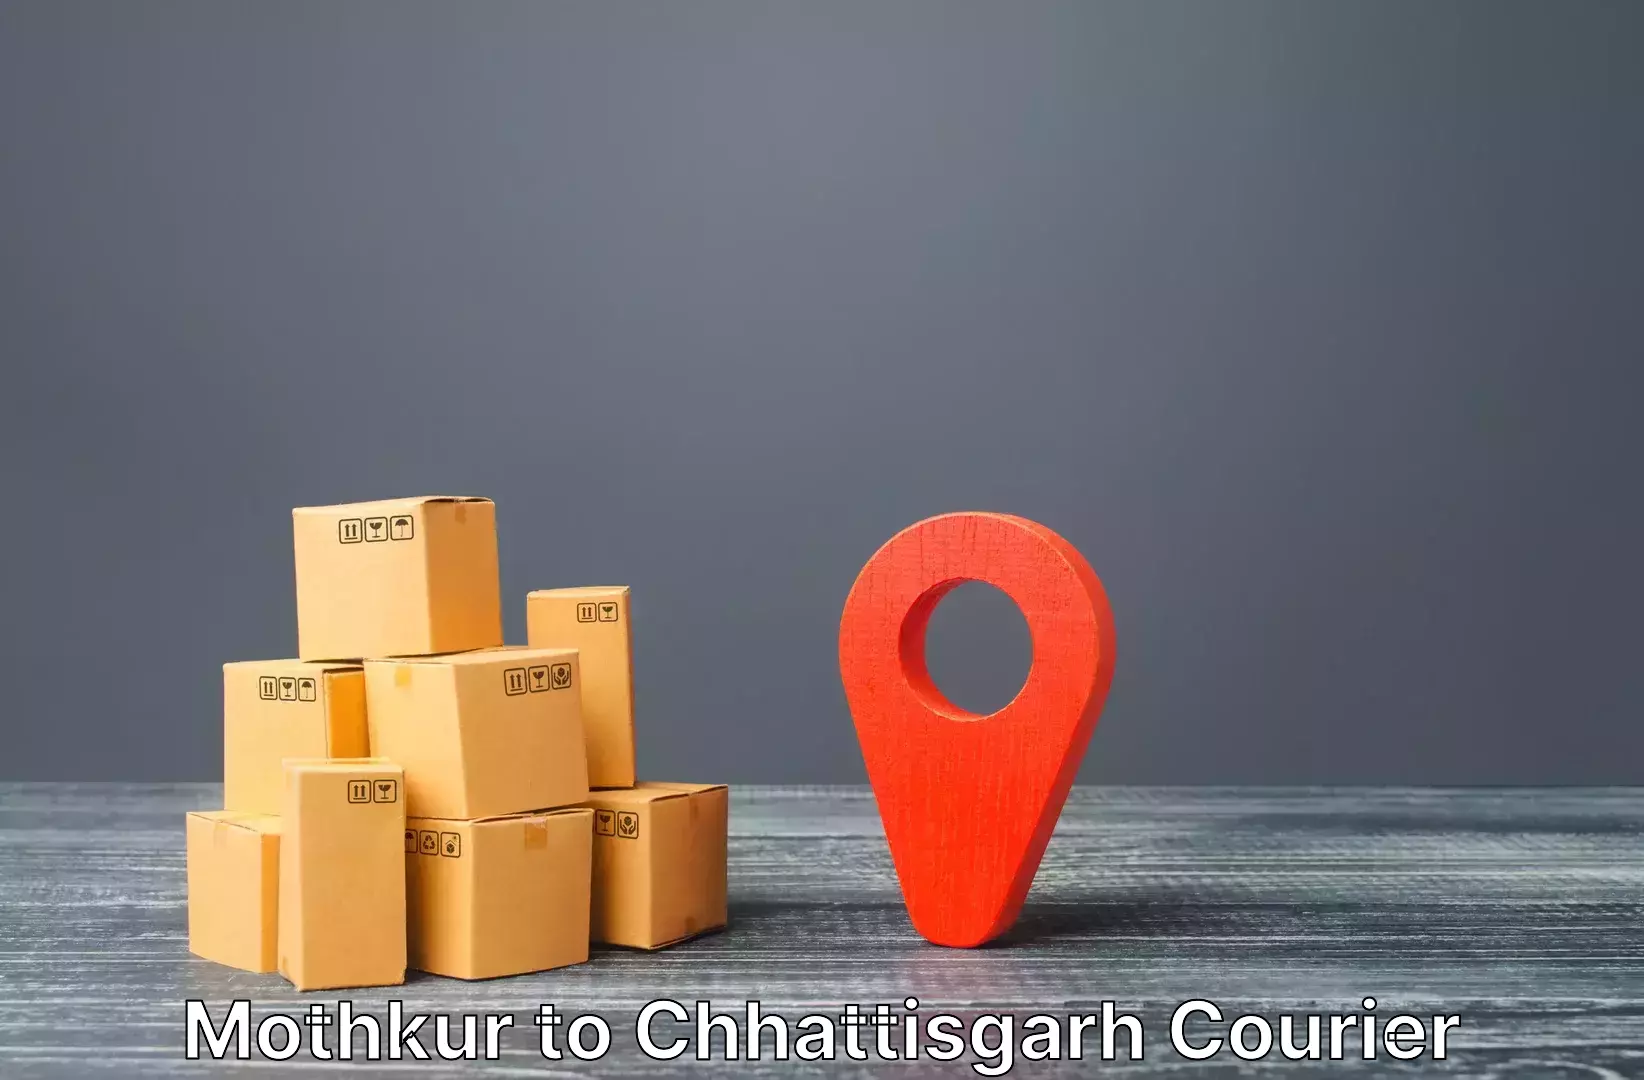 Efficient baggage courier system Mothkur to Bijapur Chhattisgarh